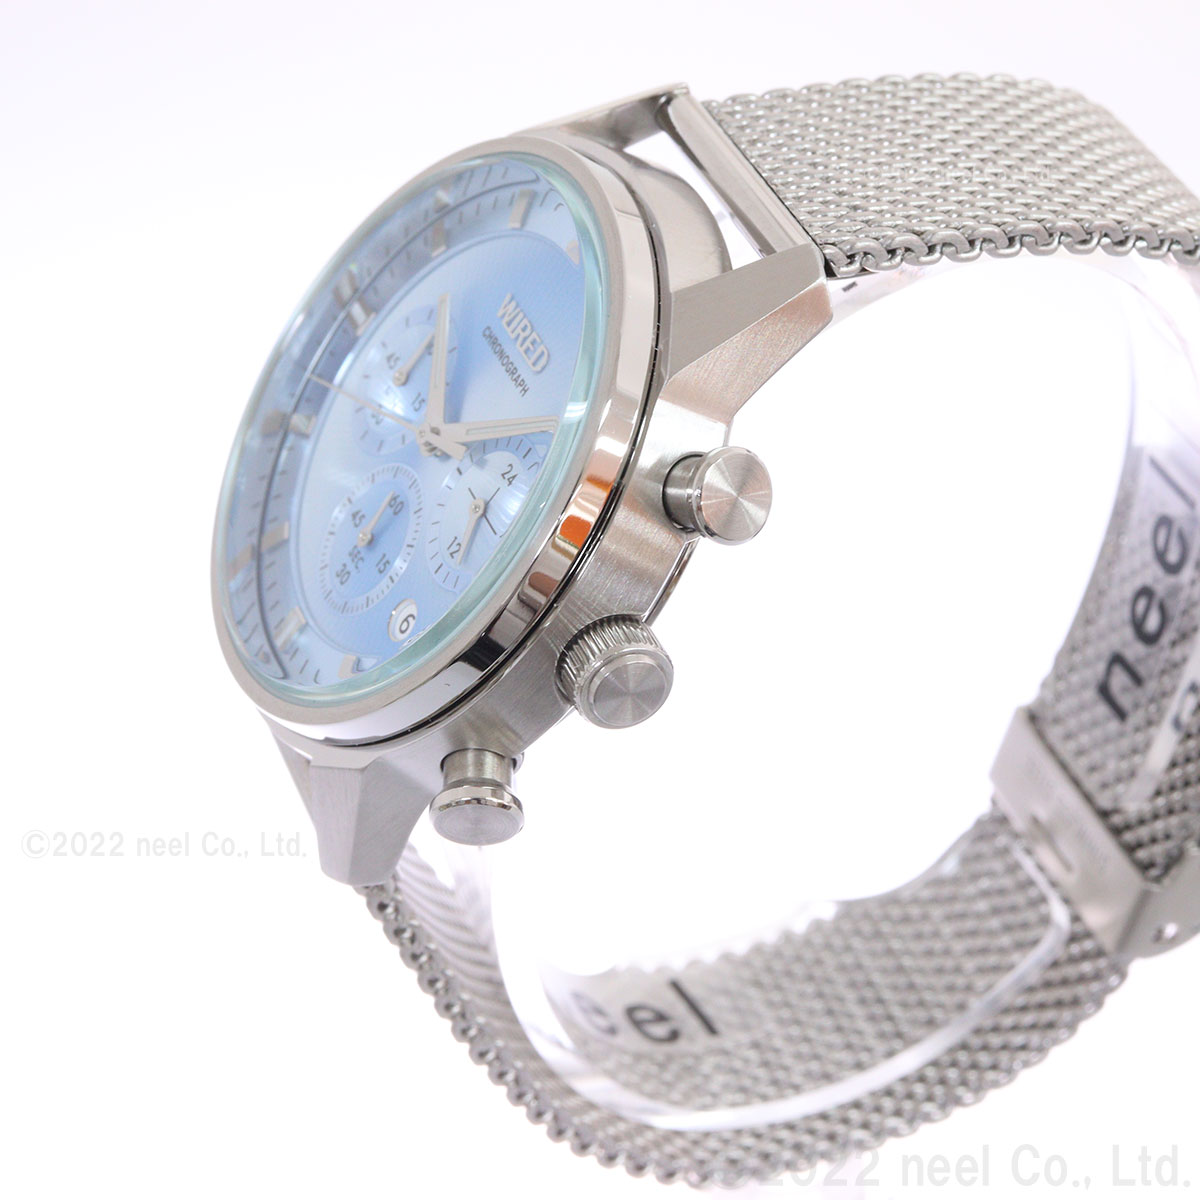 ワイアード WIRED 腕時計 メンズ クロノグラフ TOKYO SORA AGAT454